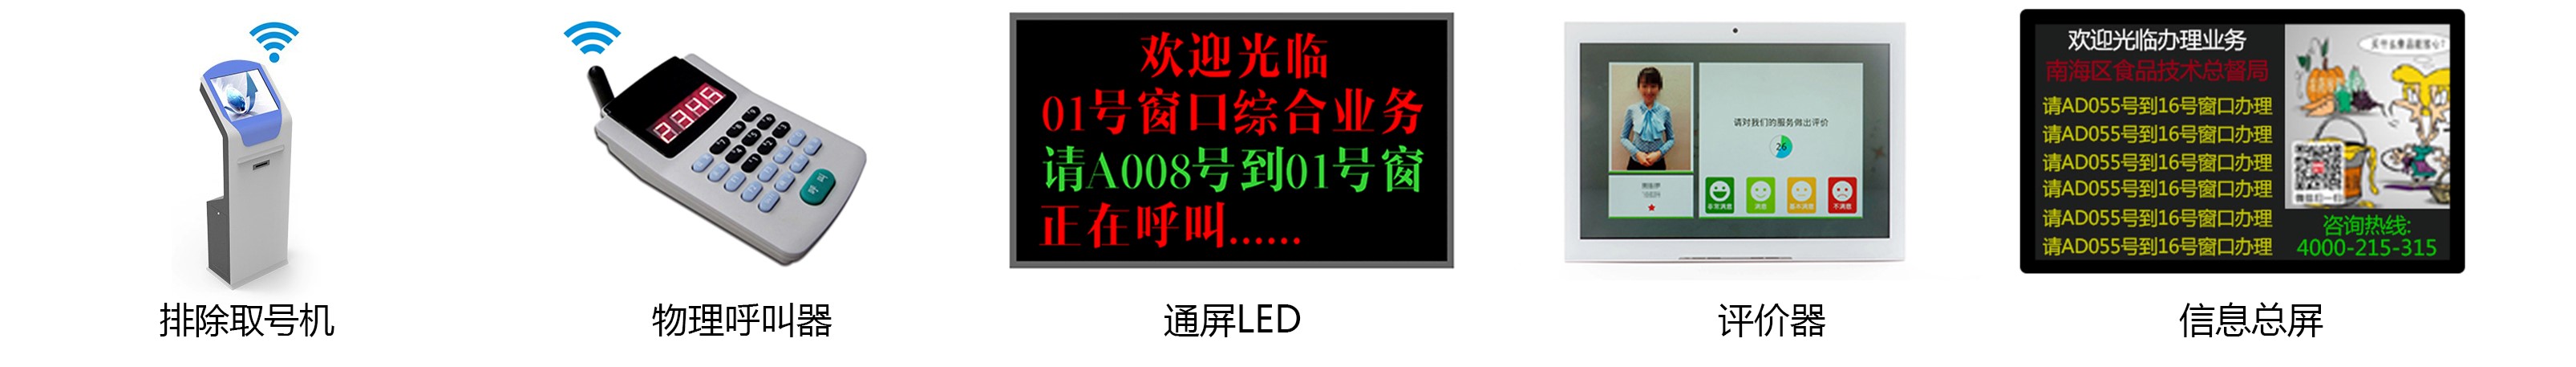 22寸排队叫号机信息看板PZ-22BE--广州磐众智能科技有限公司